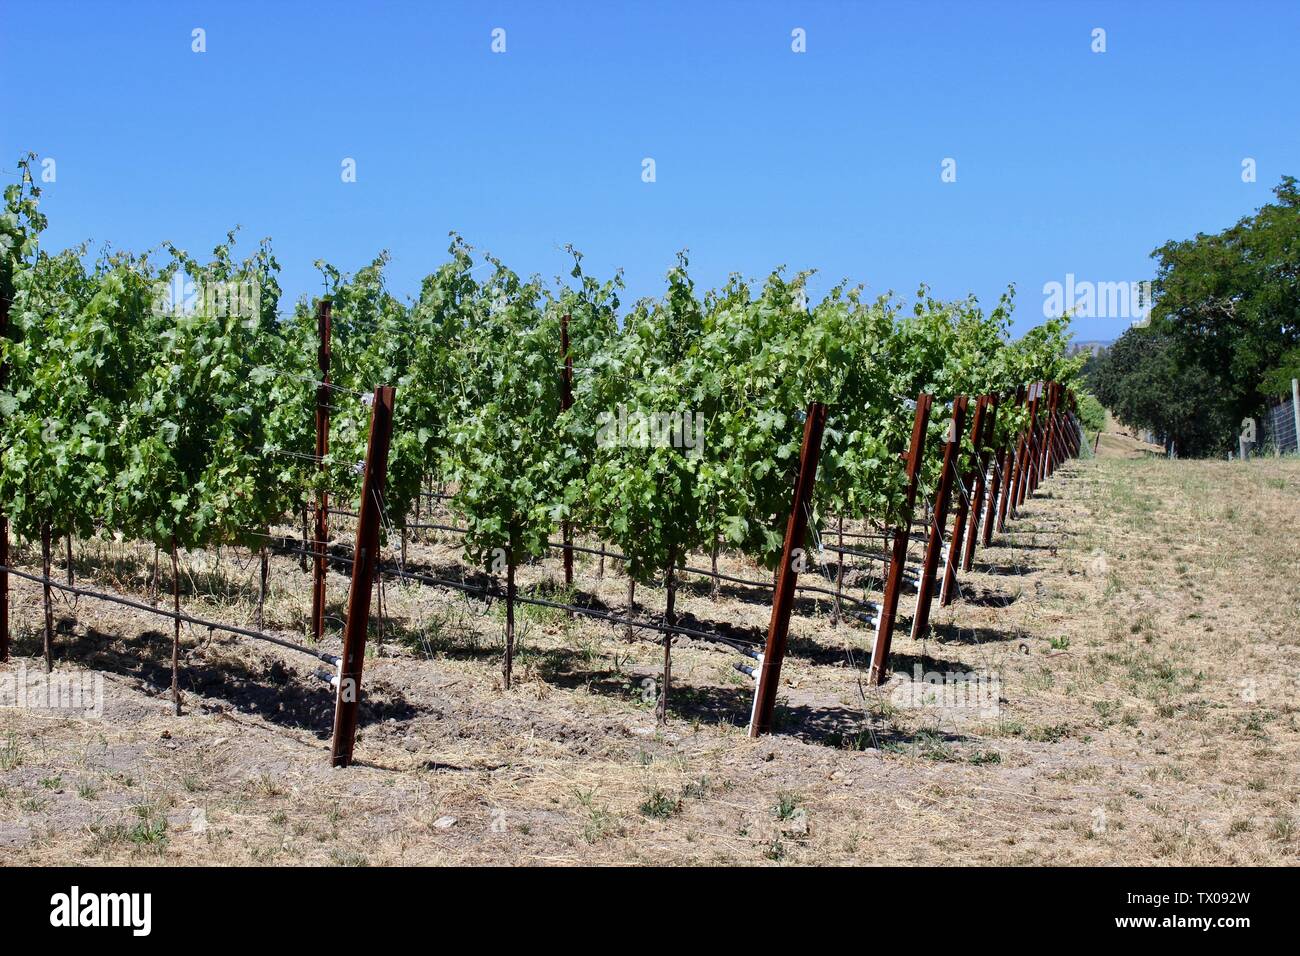 Vineyard, Coombsville, Napa Valley, California Stock Photo